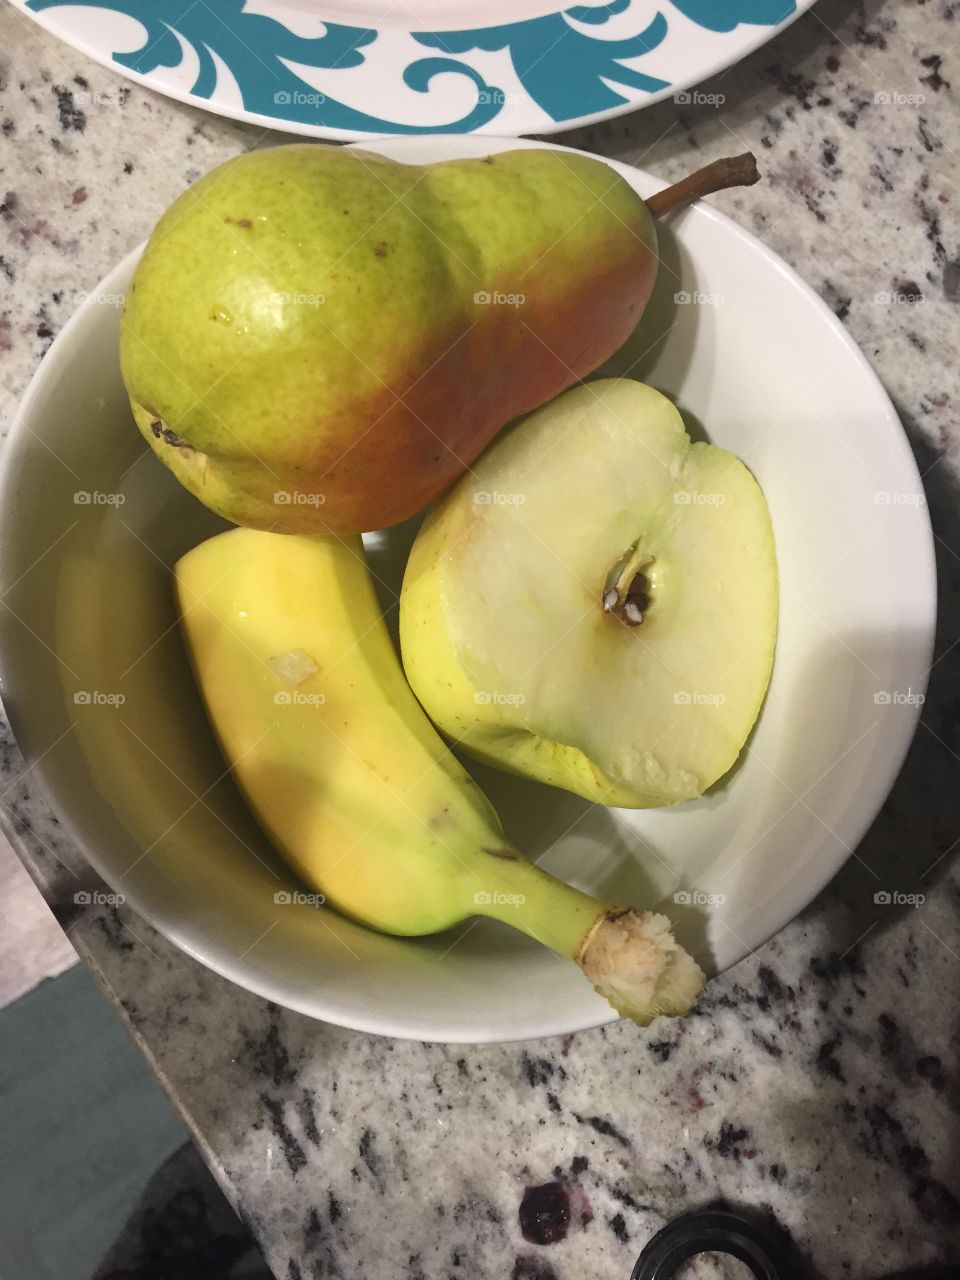 Healthy fruit